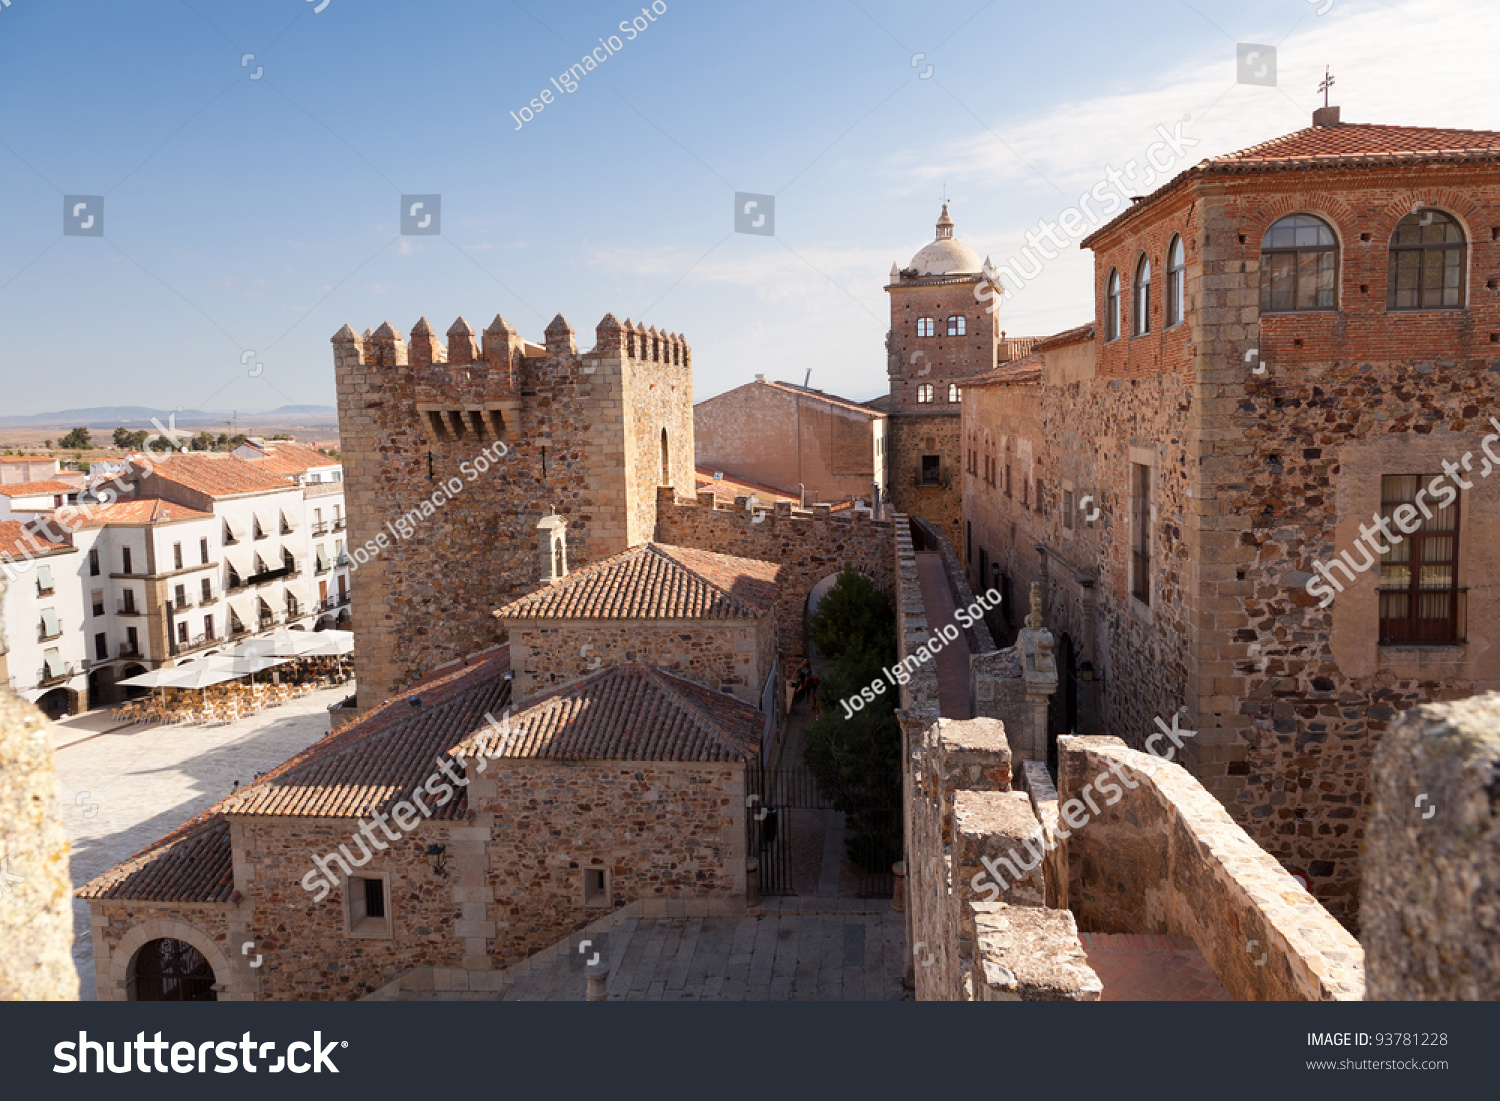 stock-photo-caceres-monumental-bujaco-tower-toledo-moctezuma-s-palace-the-episcopal-palace-and-the-plaza-93781228.jpg